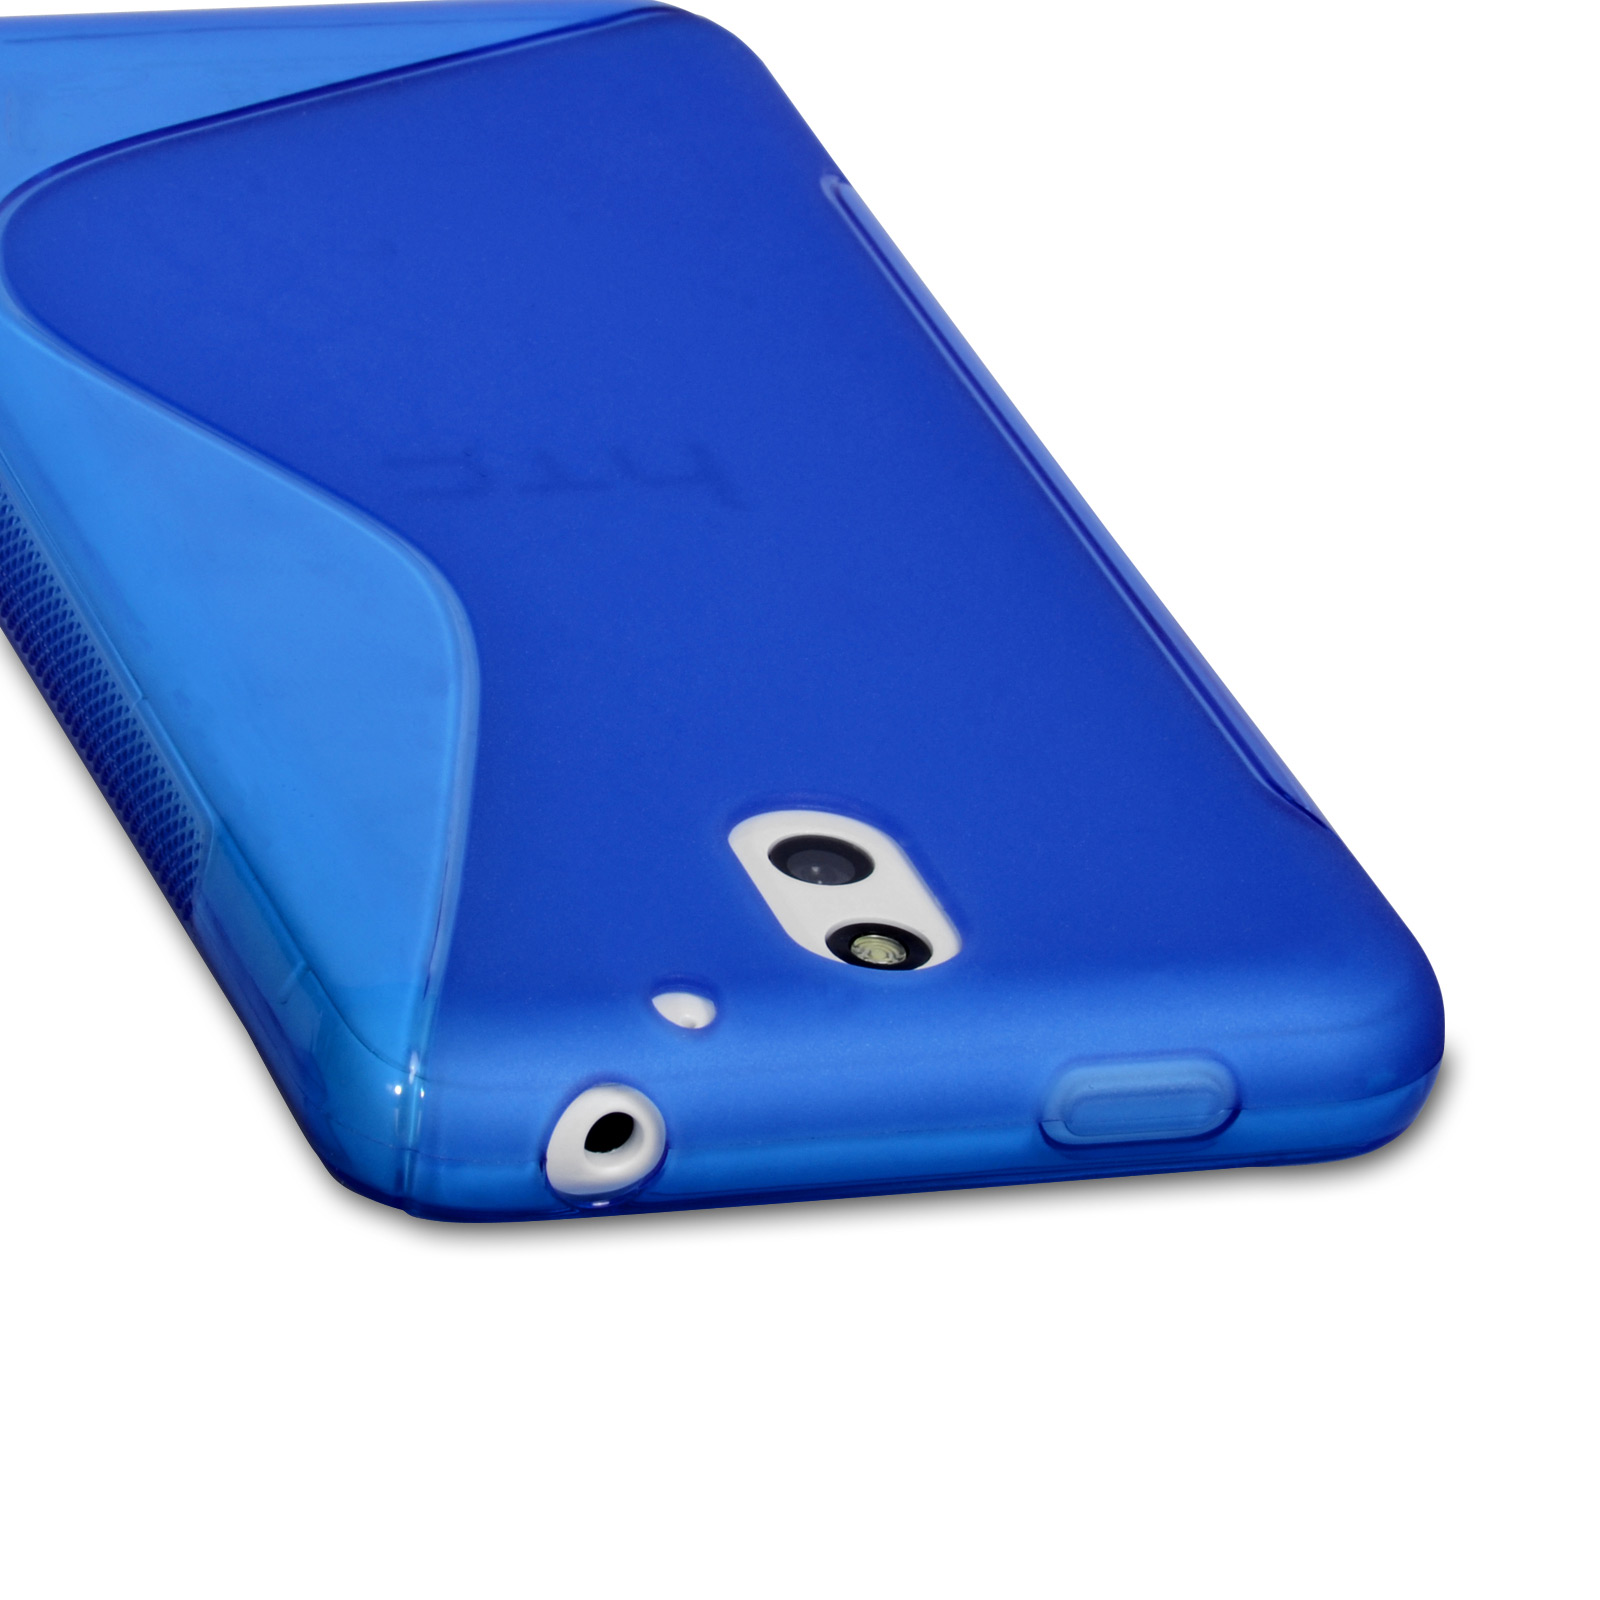 Caseflex HTC Desire 610 Silicone Gel S-Line Case - Blue